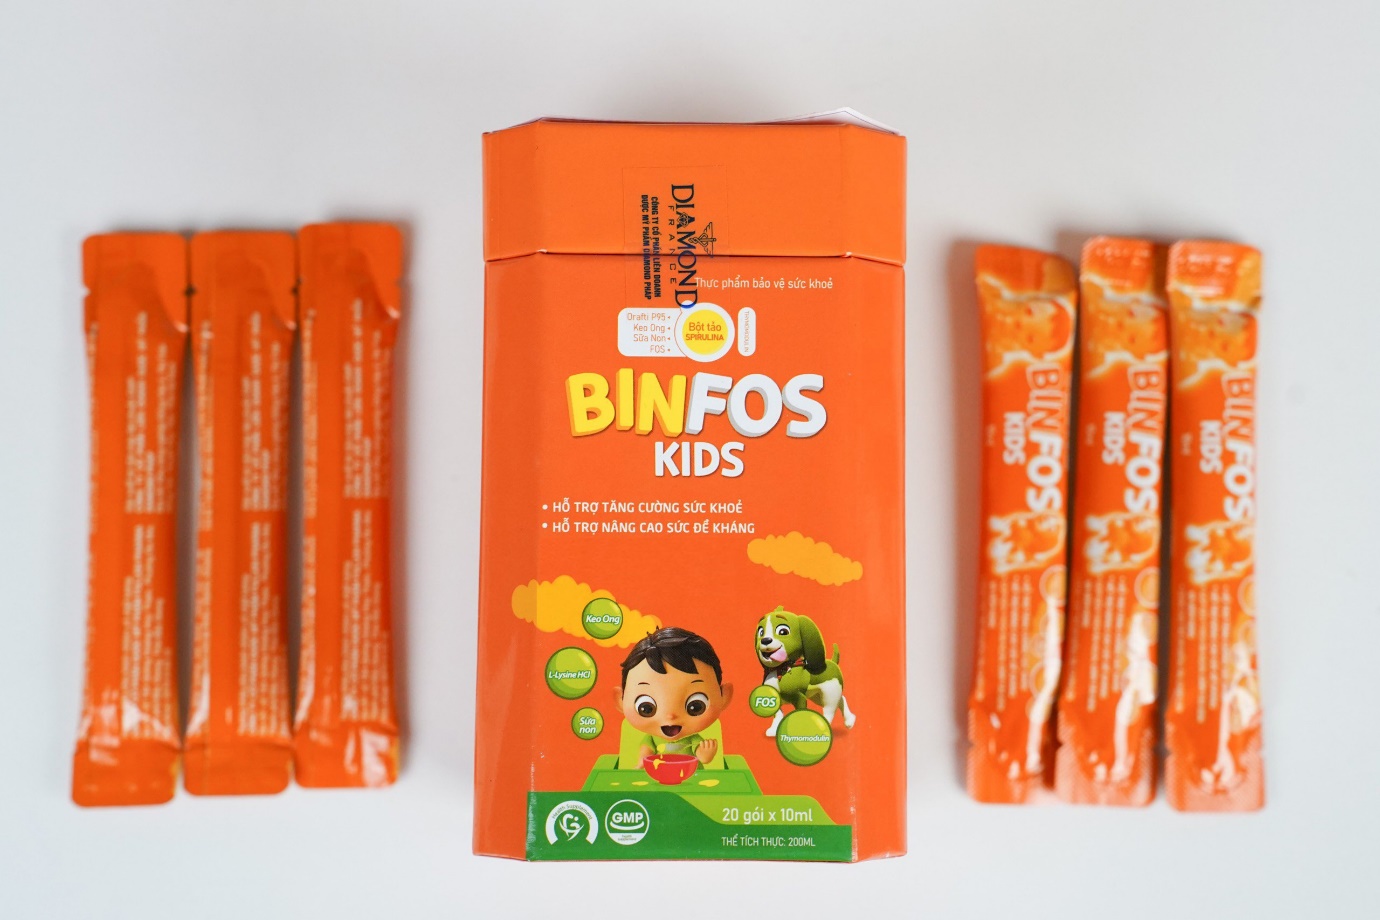 Binfos Kids – Tăng cường sức khỏe, nâng cao đề kháng cho bé - Ảnh 4.